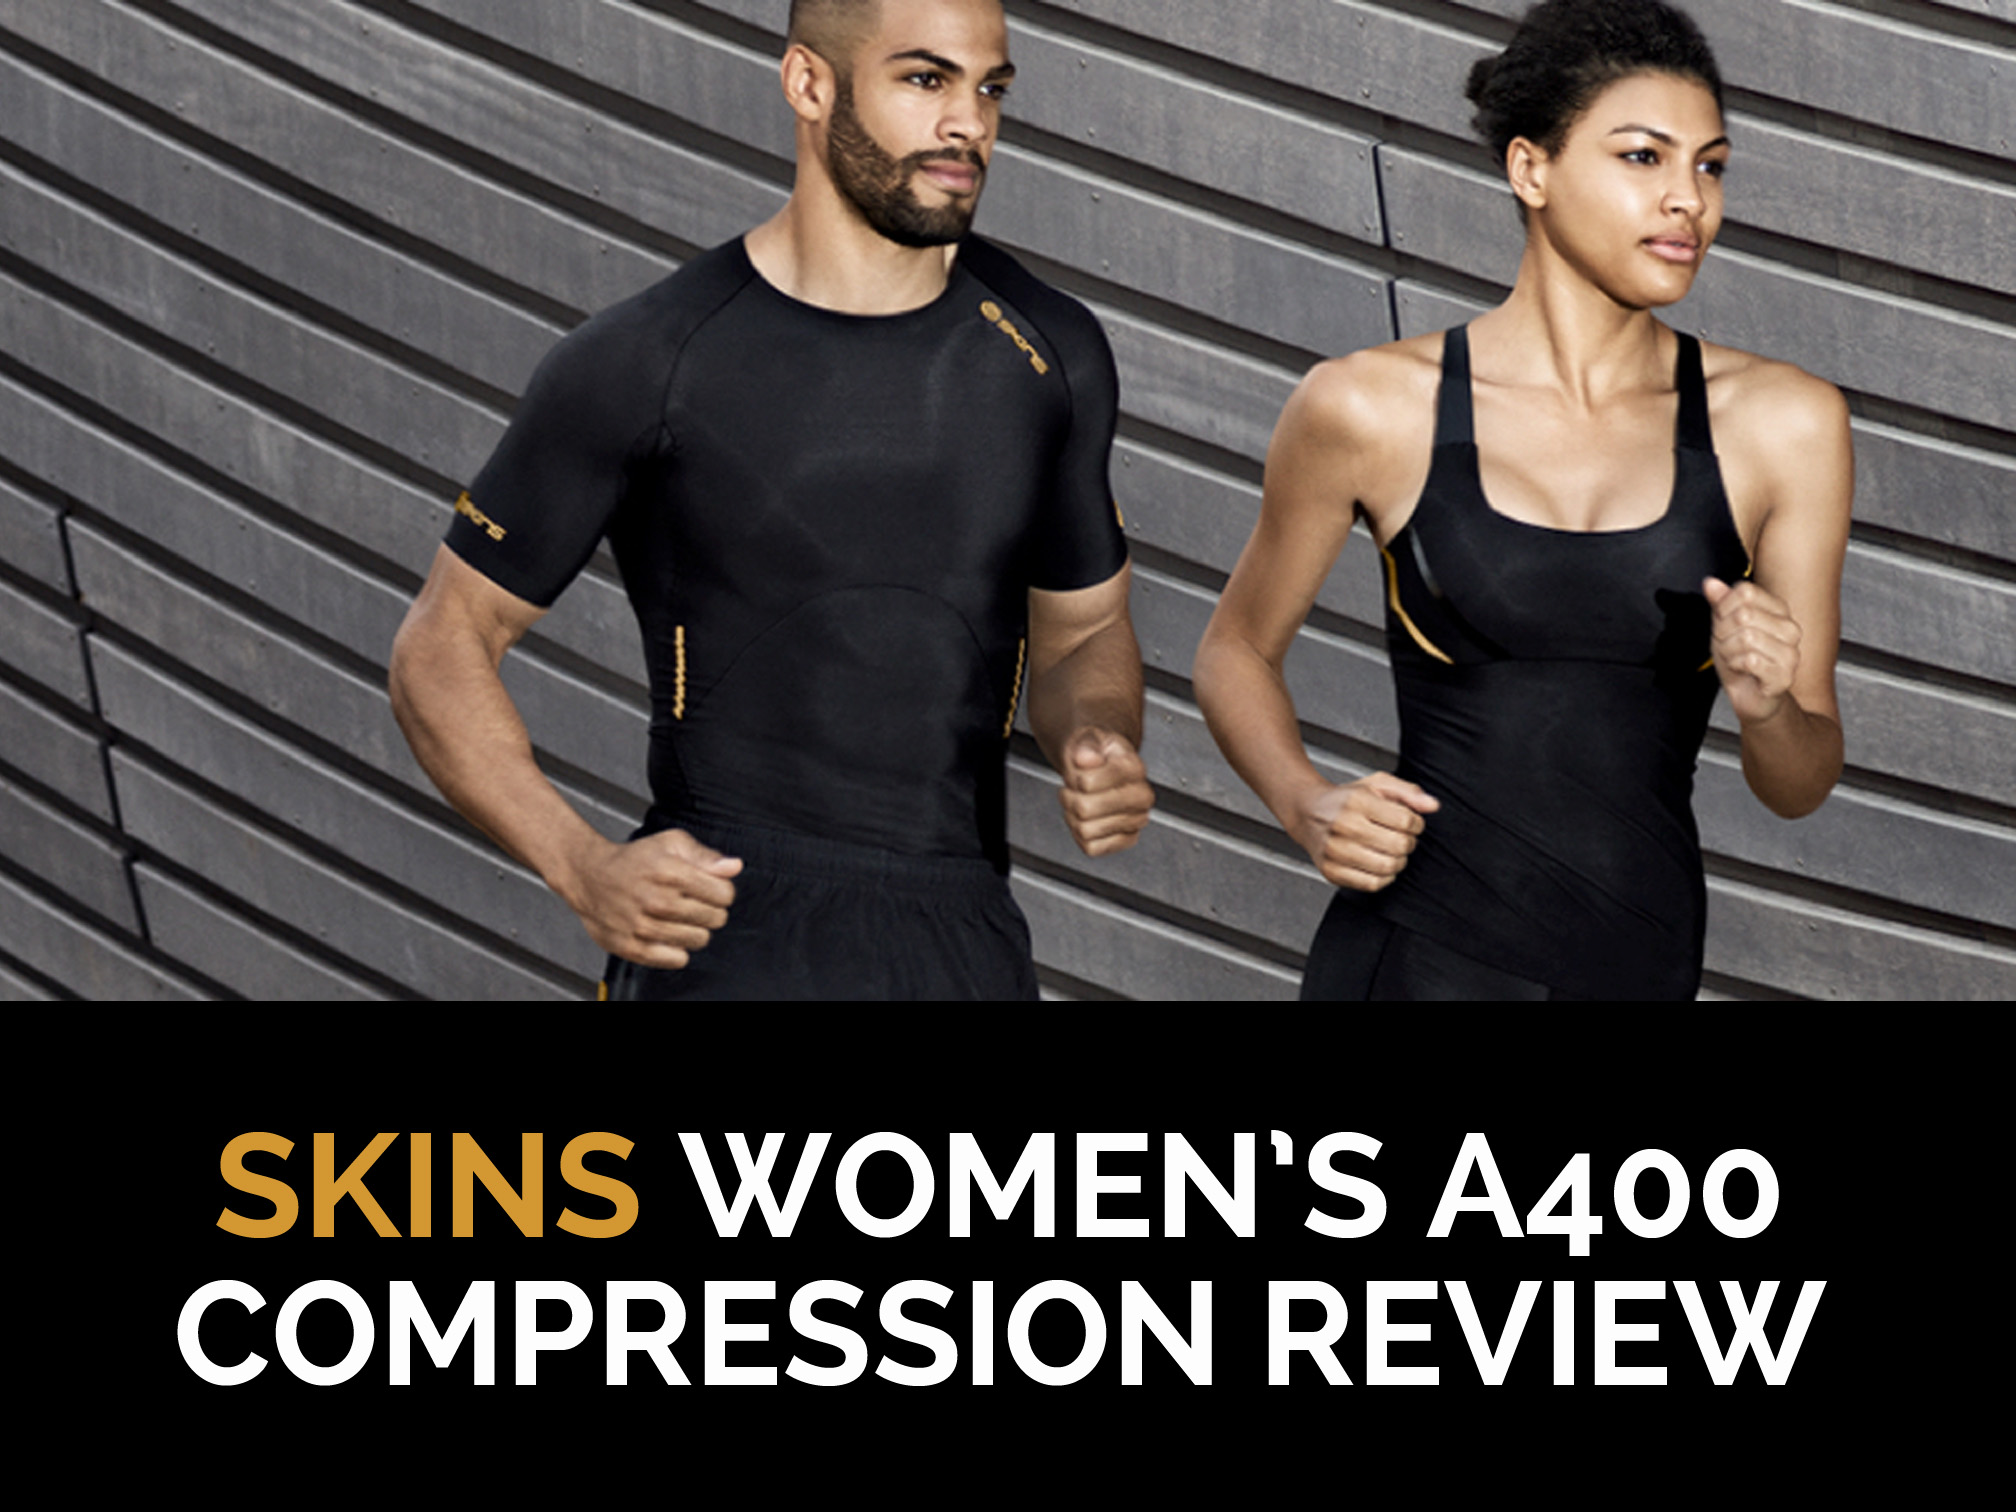 SKINS Compression Reviews  Read Customer Service Reviews of  skinscompression.com